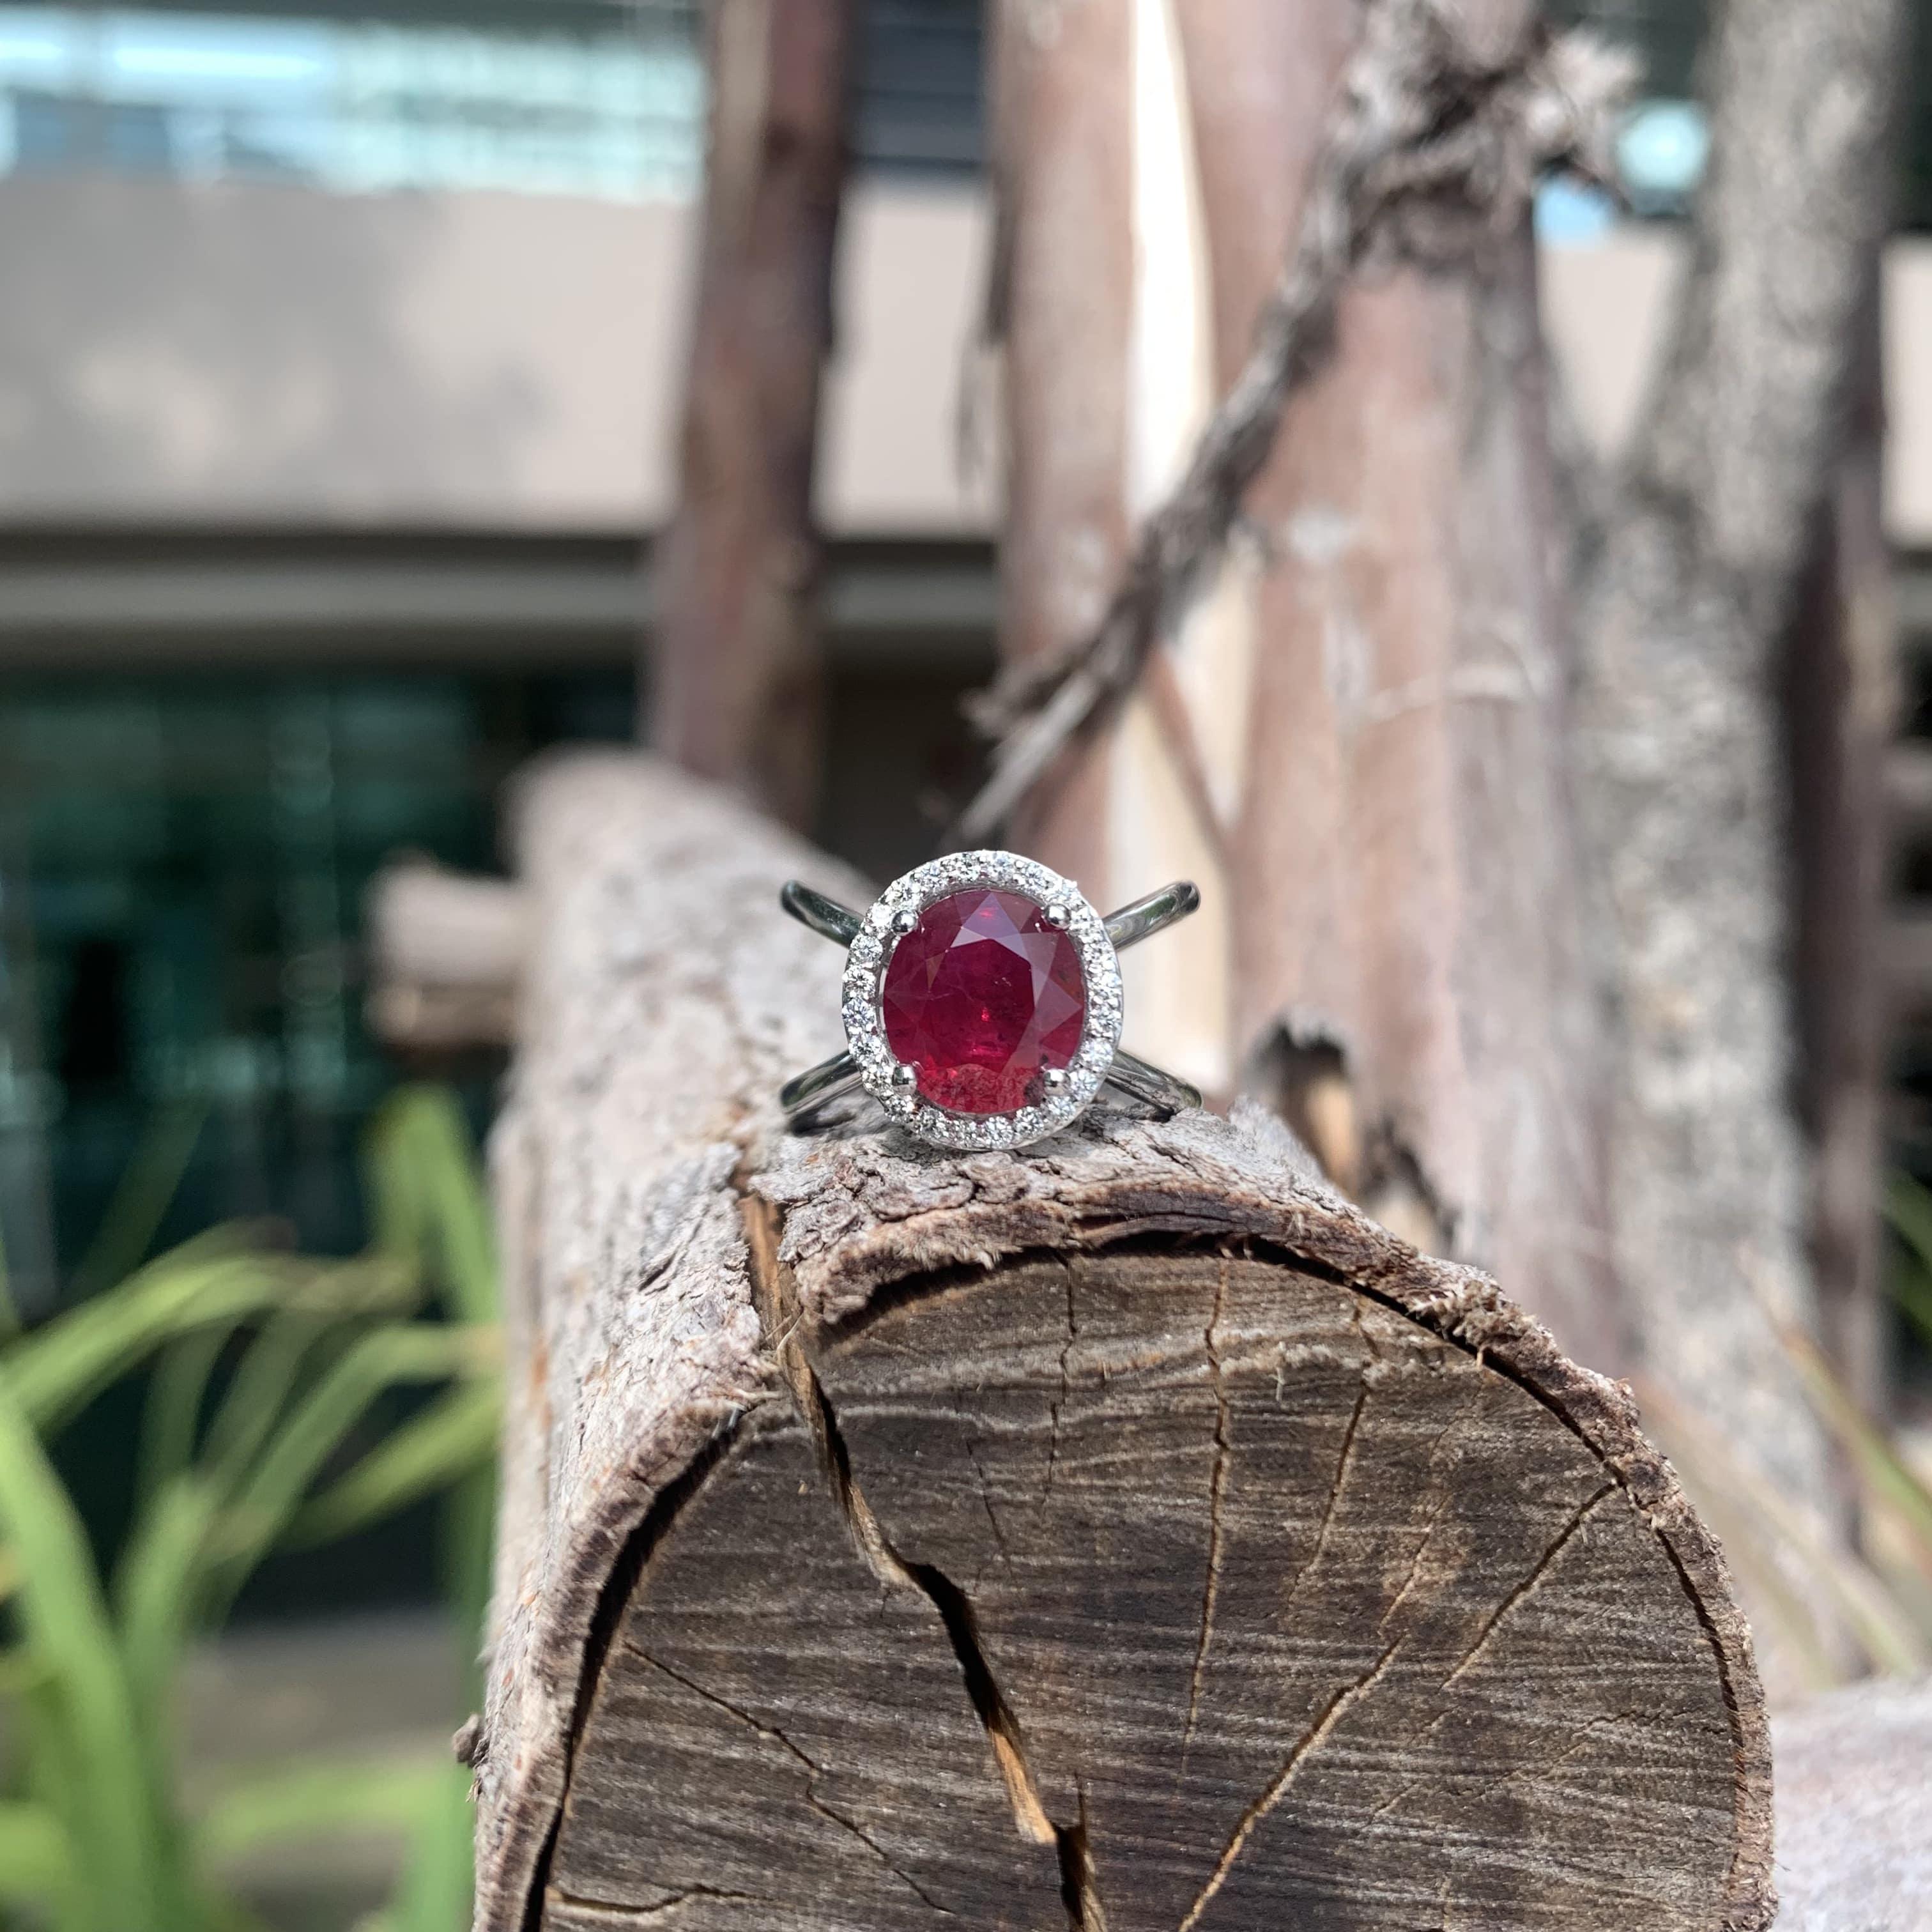 Das Herzstück dieses exquisiten Rings ist ein faszinierender 3,23-Karat-Rubin, der in einem satten, tiefen Rot erstrahlt, das Leidenschaft und Eleganz symbolisiert. Der aus Mosambik stammende Rubin mit seinem leuchtenden Taubenblut-Farbton strahlt